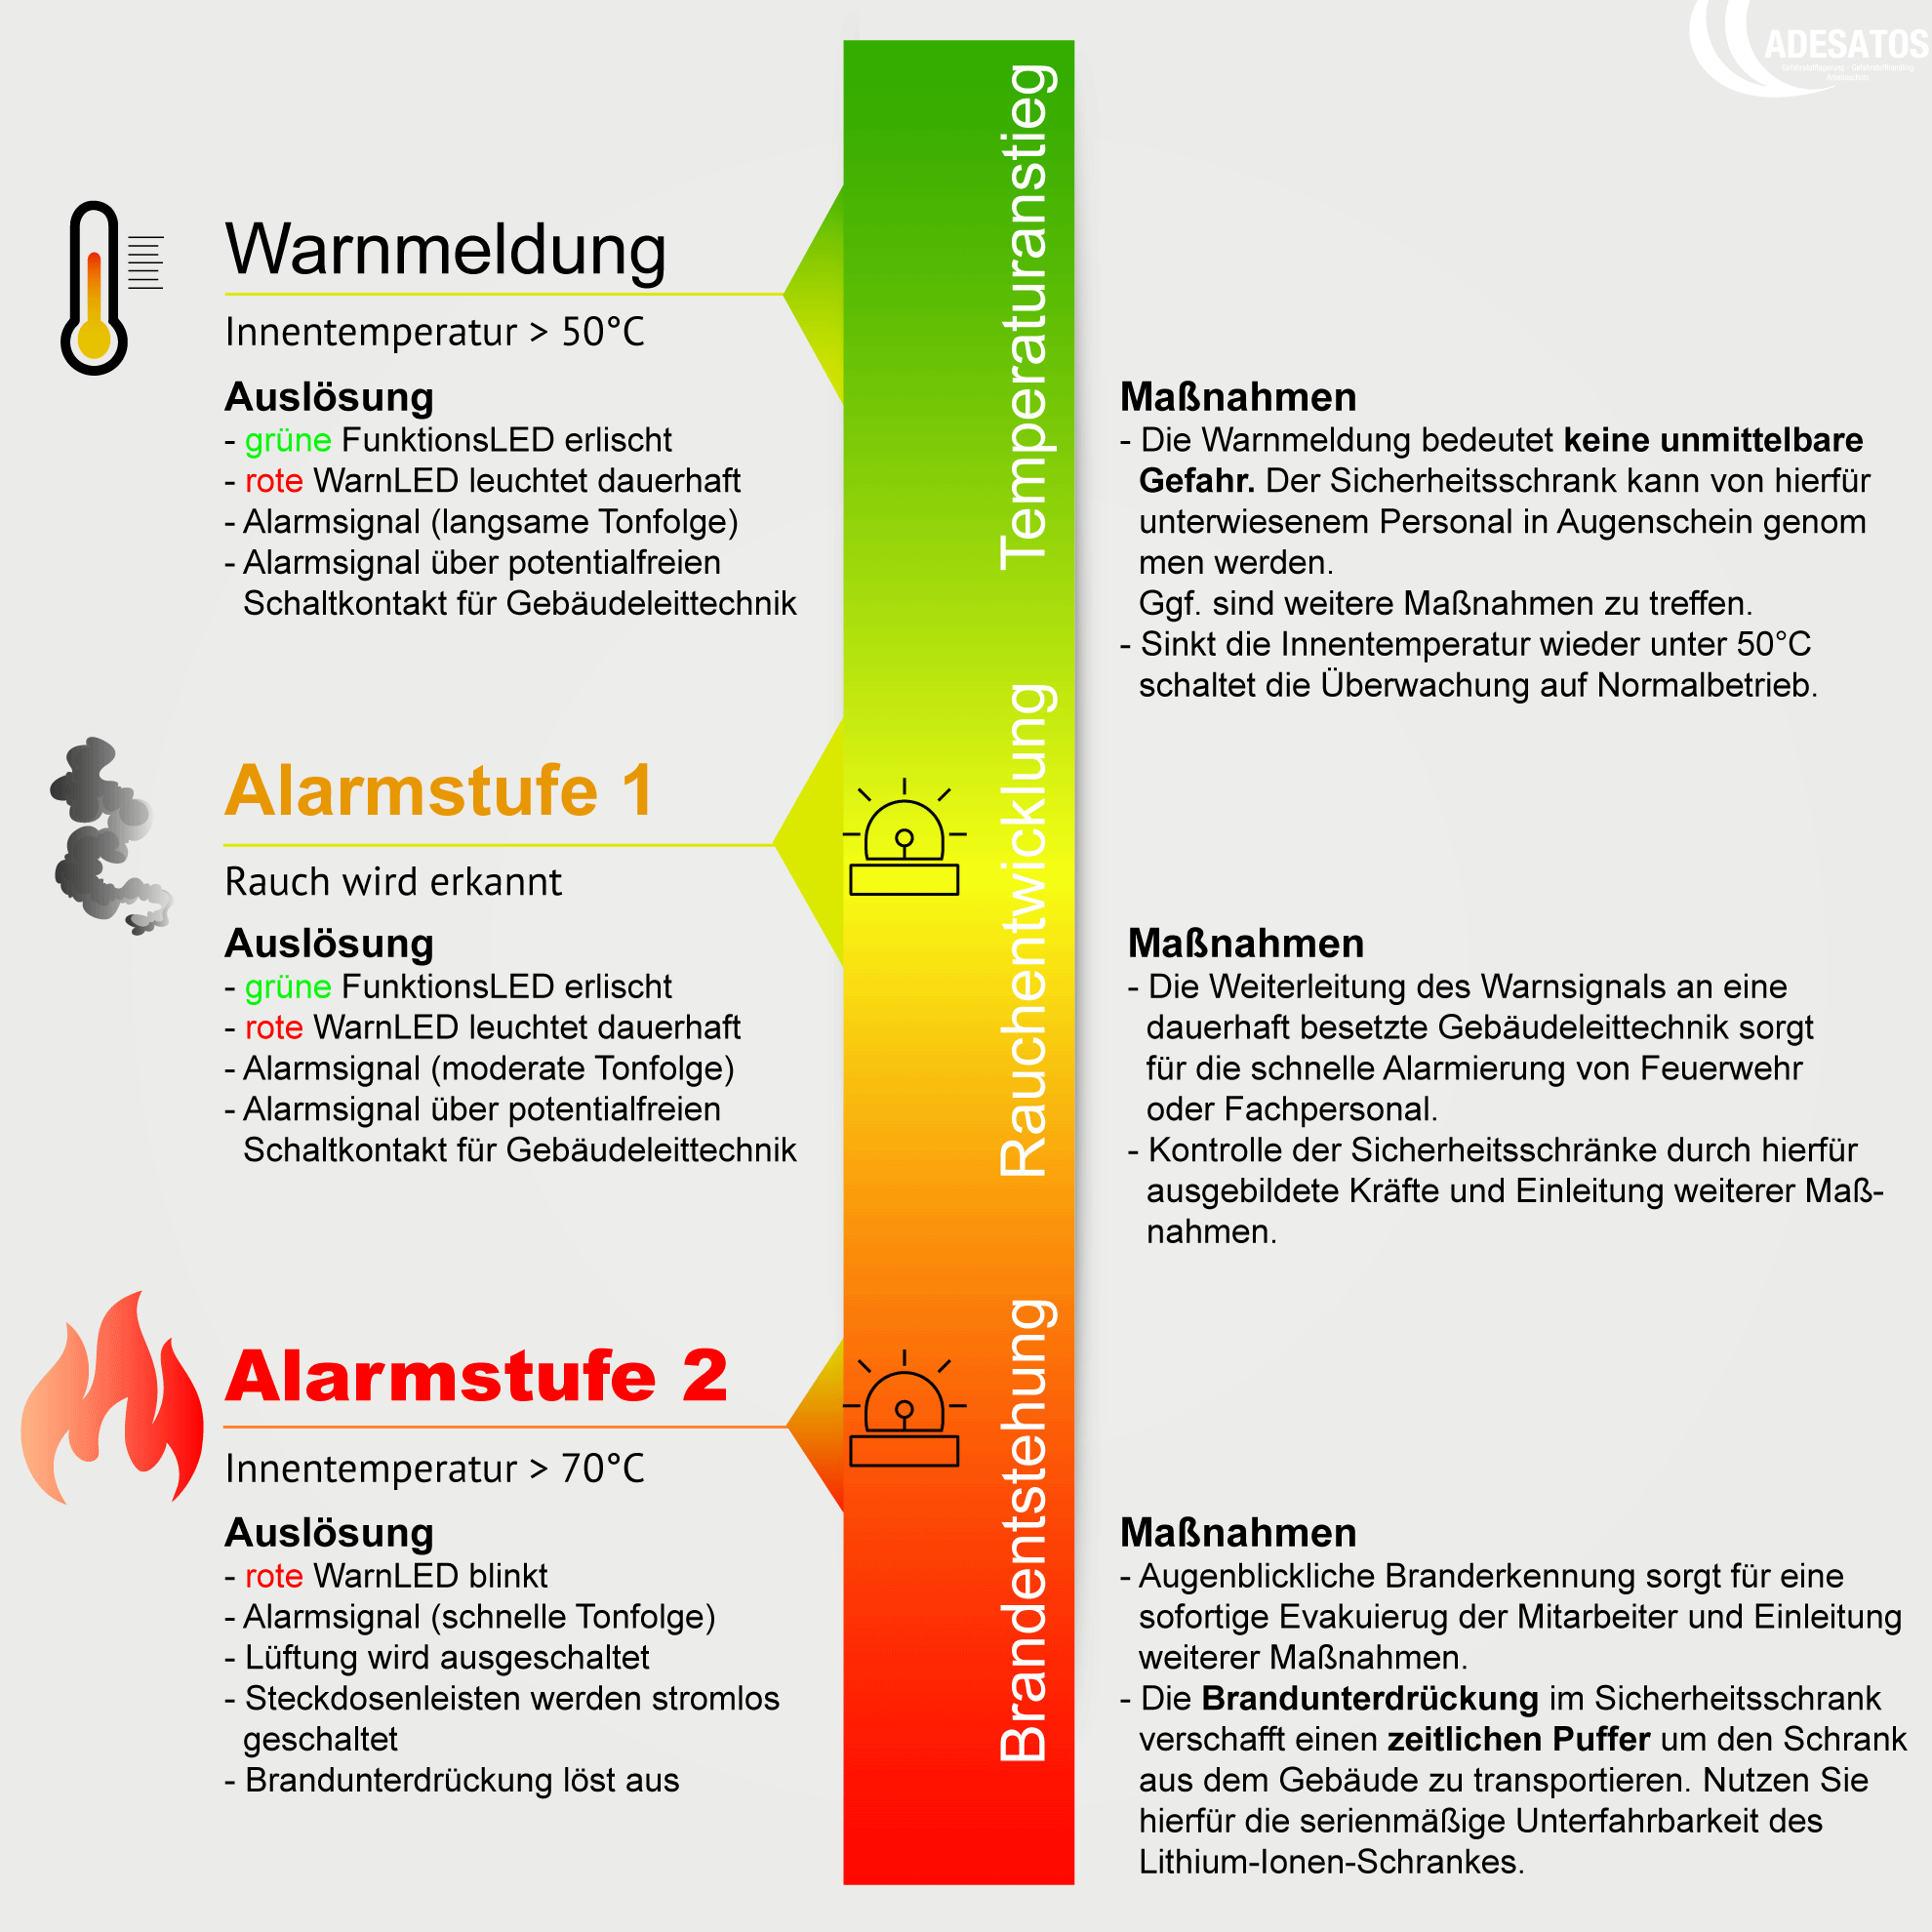 Warn-und-Brandunterdrückung Lithium-Ionen-Schrank